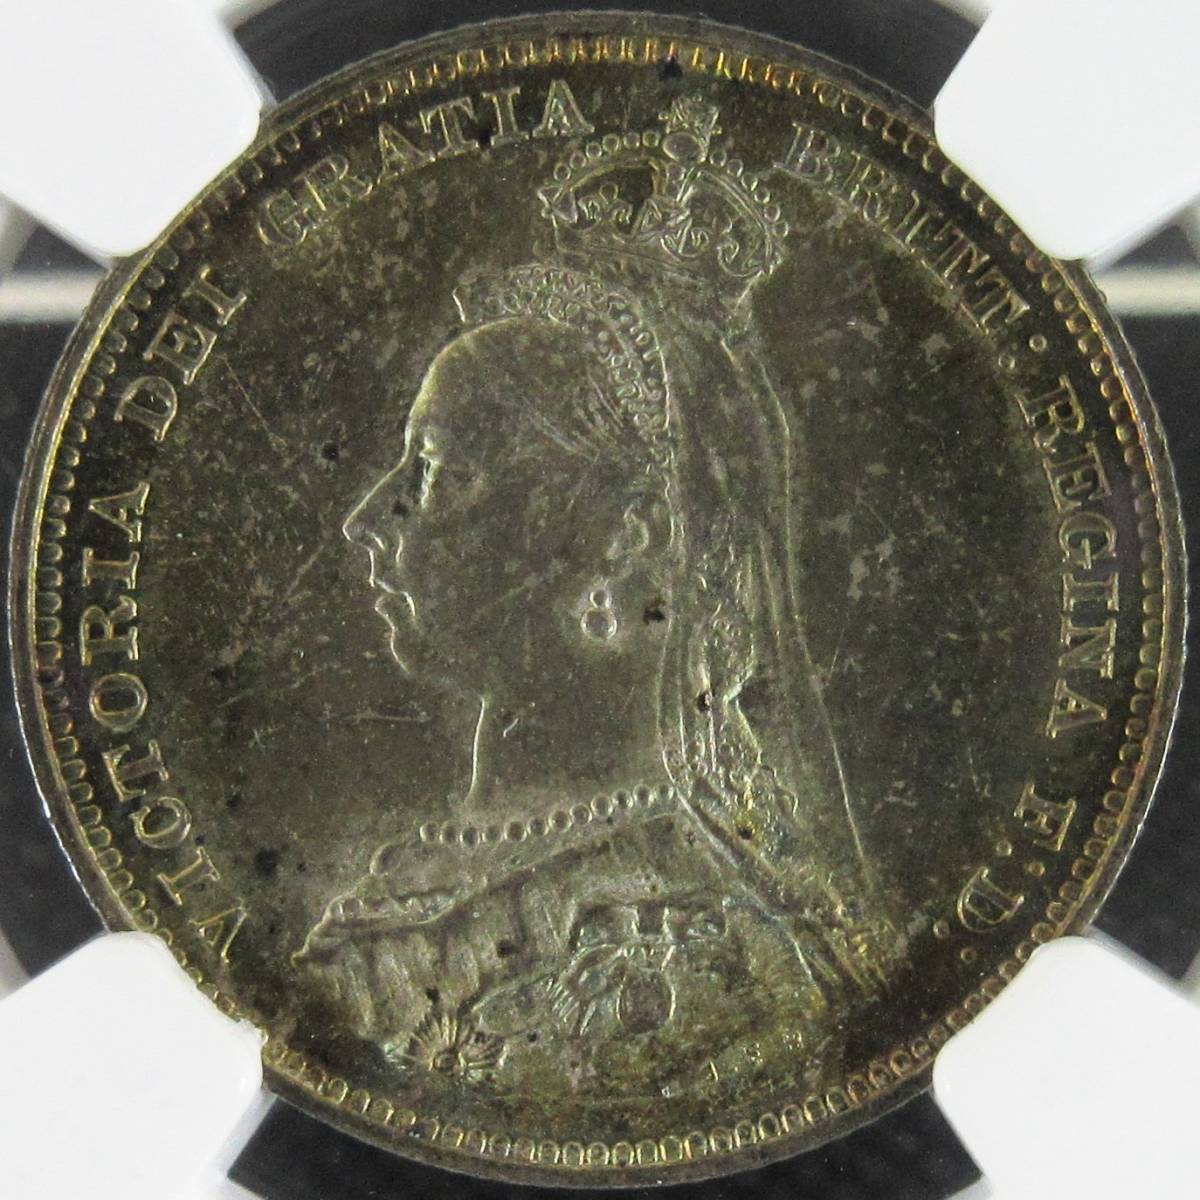 奇跡のトーン! 1887 イギリス 1シリング 銀貨 ヴィクトリア女王 ジュビリーヘッド NGC MS63 アンティークコイン ビクトリア女王_画像1